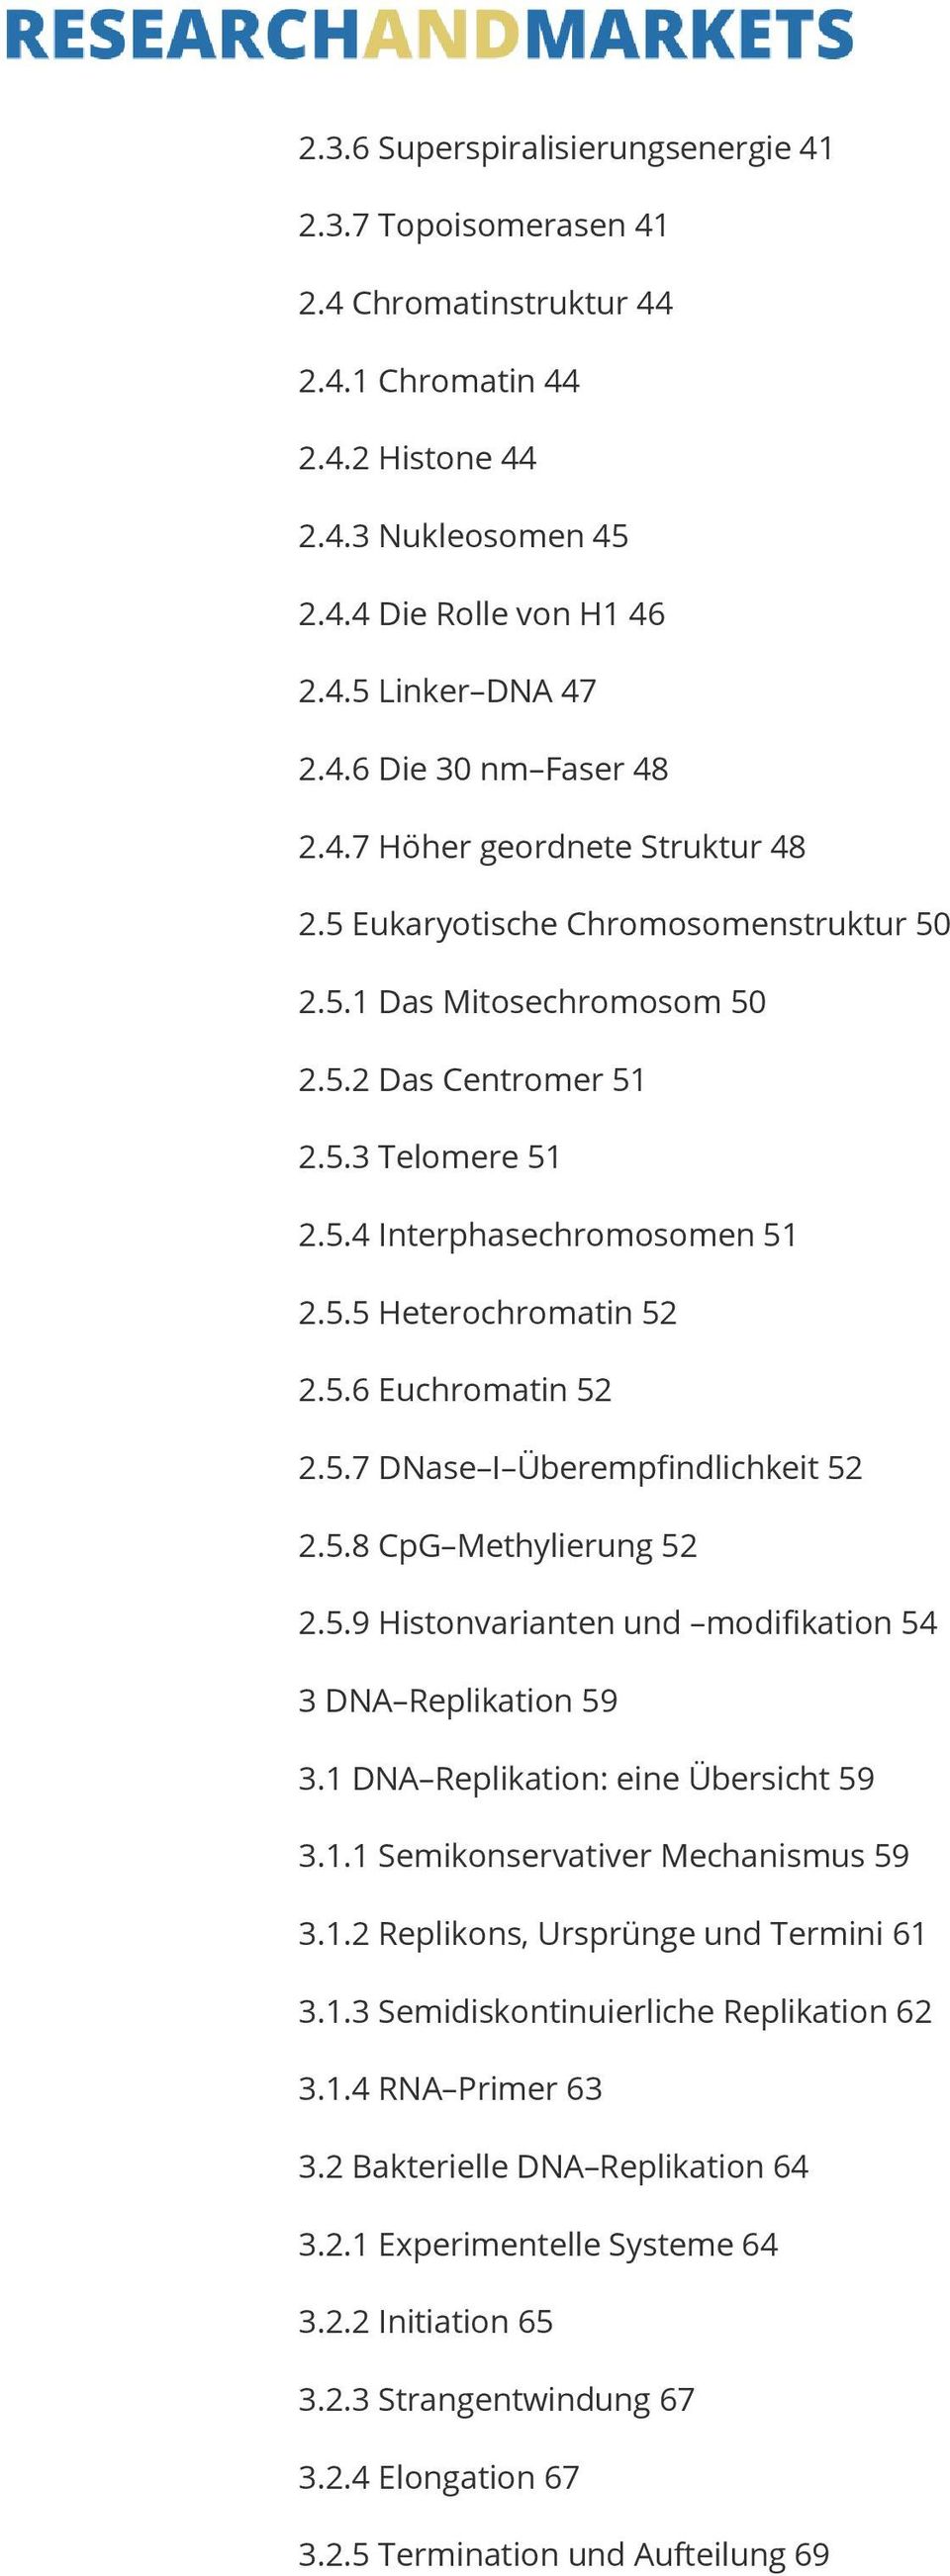 5.6 Euchromatin 52 2.5.7 DNase I Überempfindlichkeit 52 2.5.8 CpG Methylierung 52 2.5.9 Histonvarianten und modifikation 54 3 DNA Replikation 59 3.1 DNA Replikation: eine Übersicht 59 3.1.1 Semikonservativer Mechanismus 59 3.